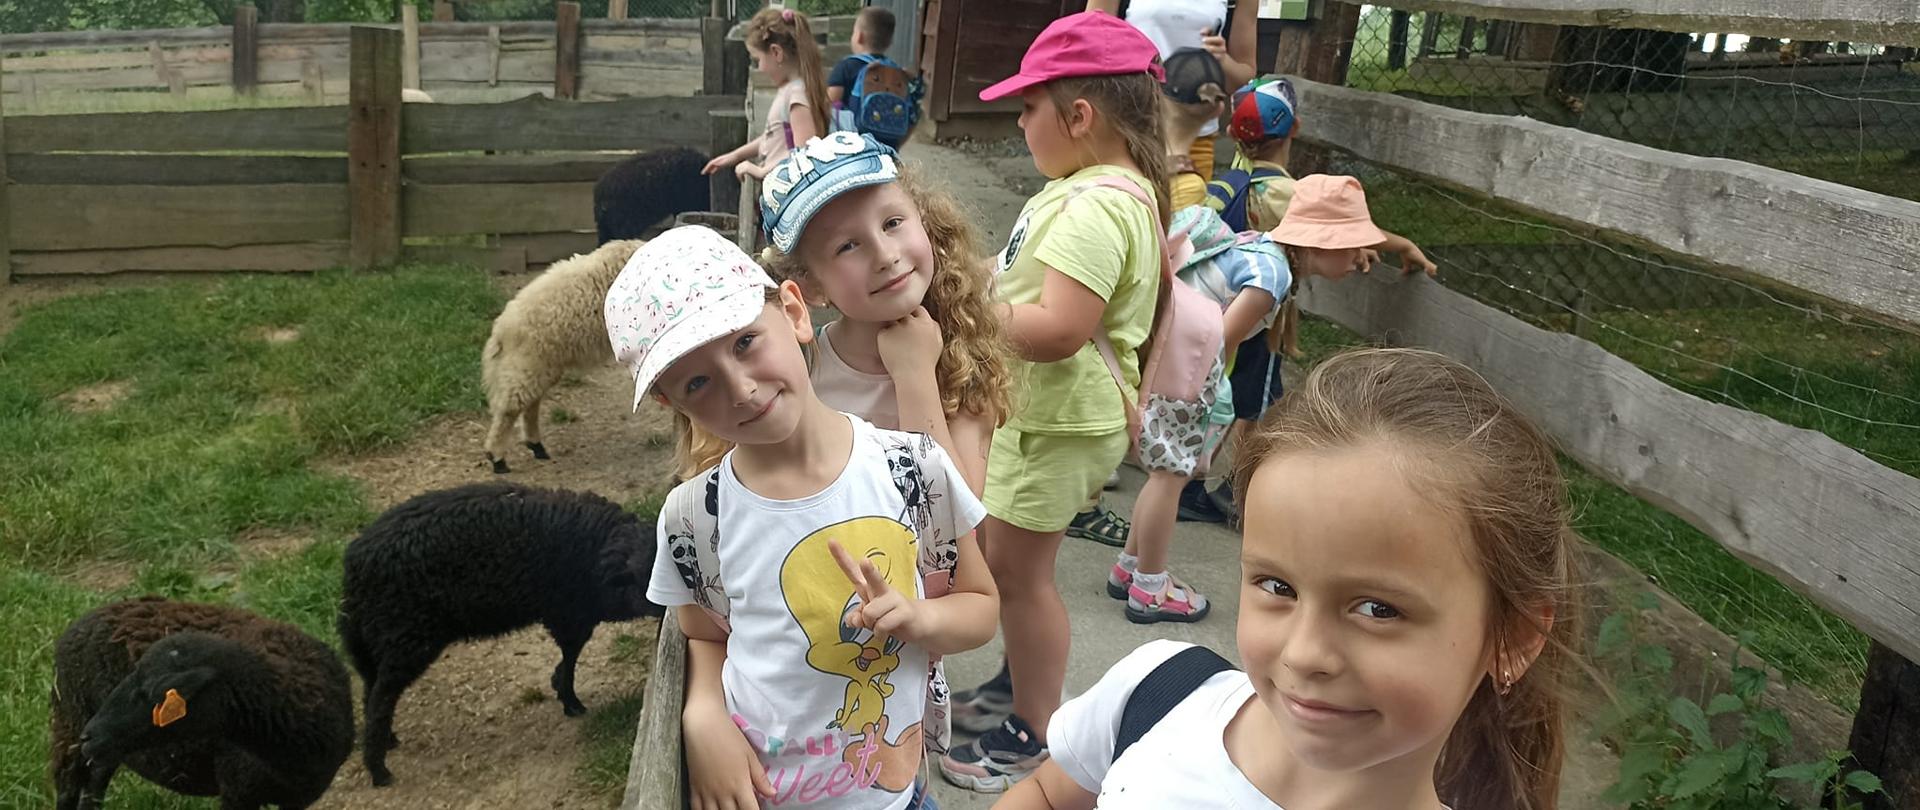 Na pierwszym planie widać 3 dziewczynki, które uśmiechają się, stojąc przy zagrodzie owiec. W zagrodzie widać 4 owce, 3 czarne i jedną białą. W tle widać inne dzieci, przyglądające się zwierzętom. 